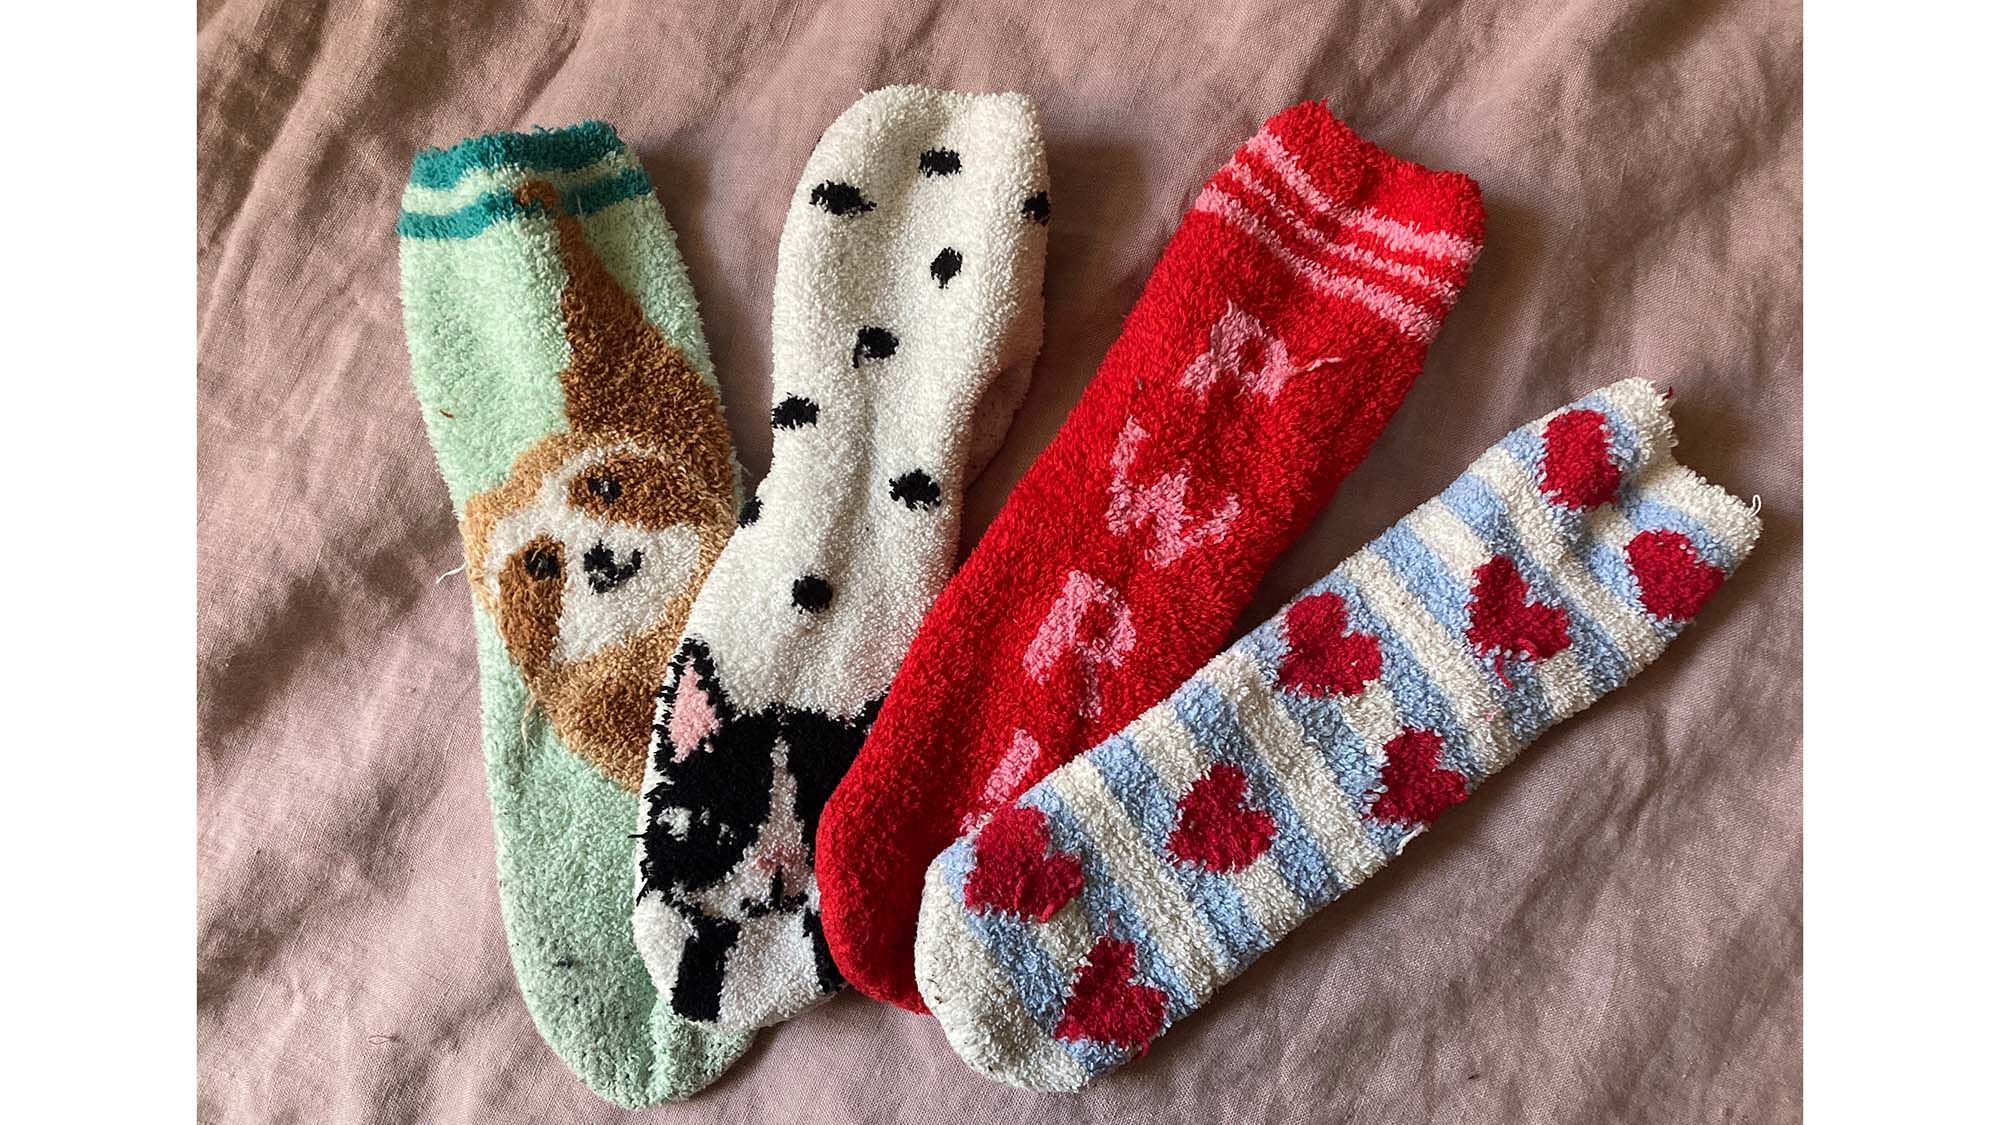 Cozy Socks 3-Pack for Women